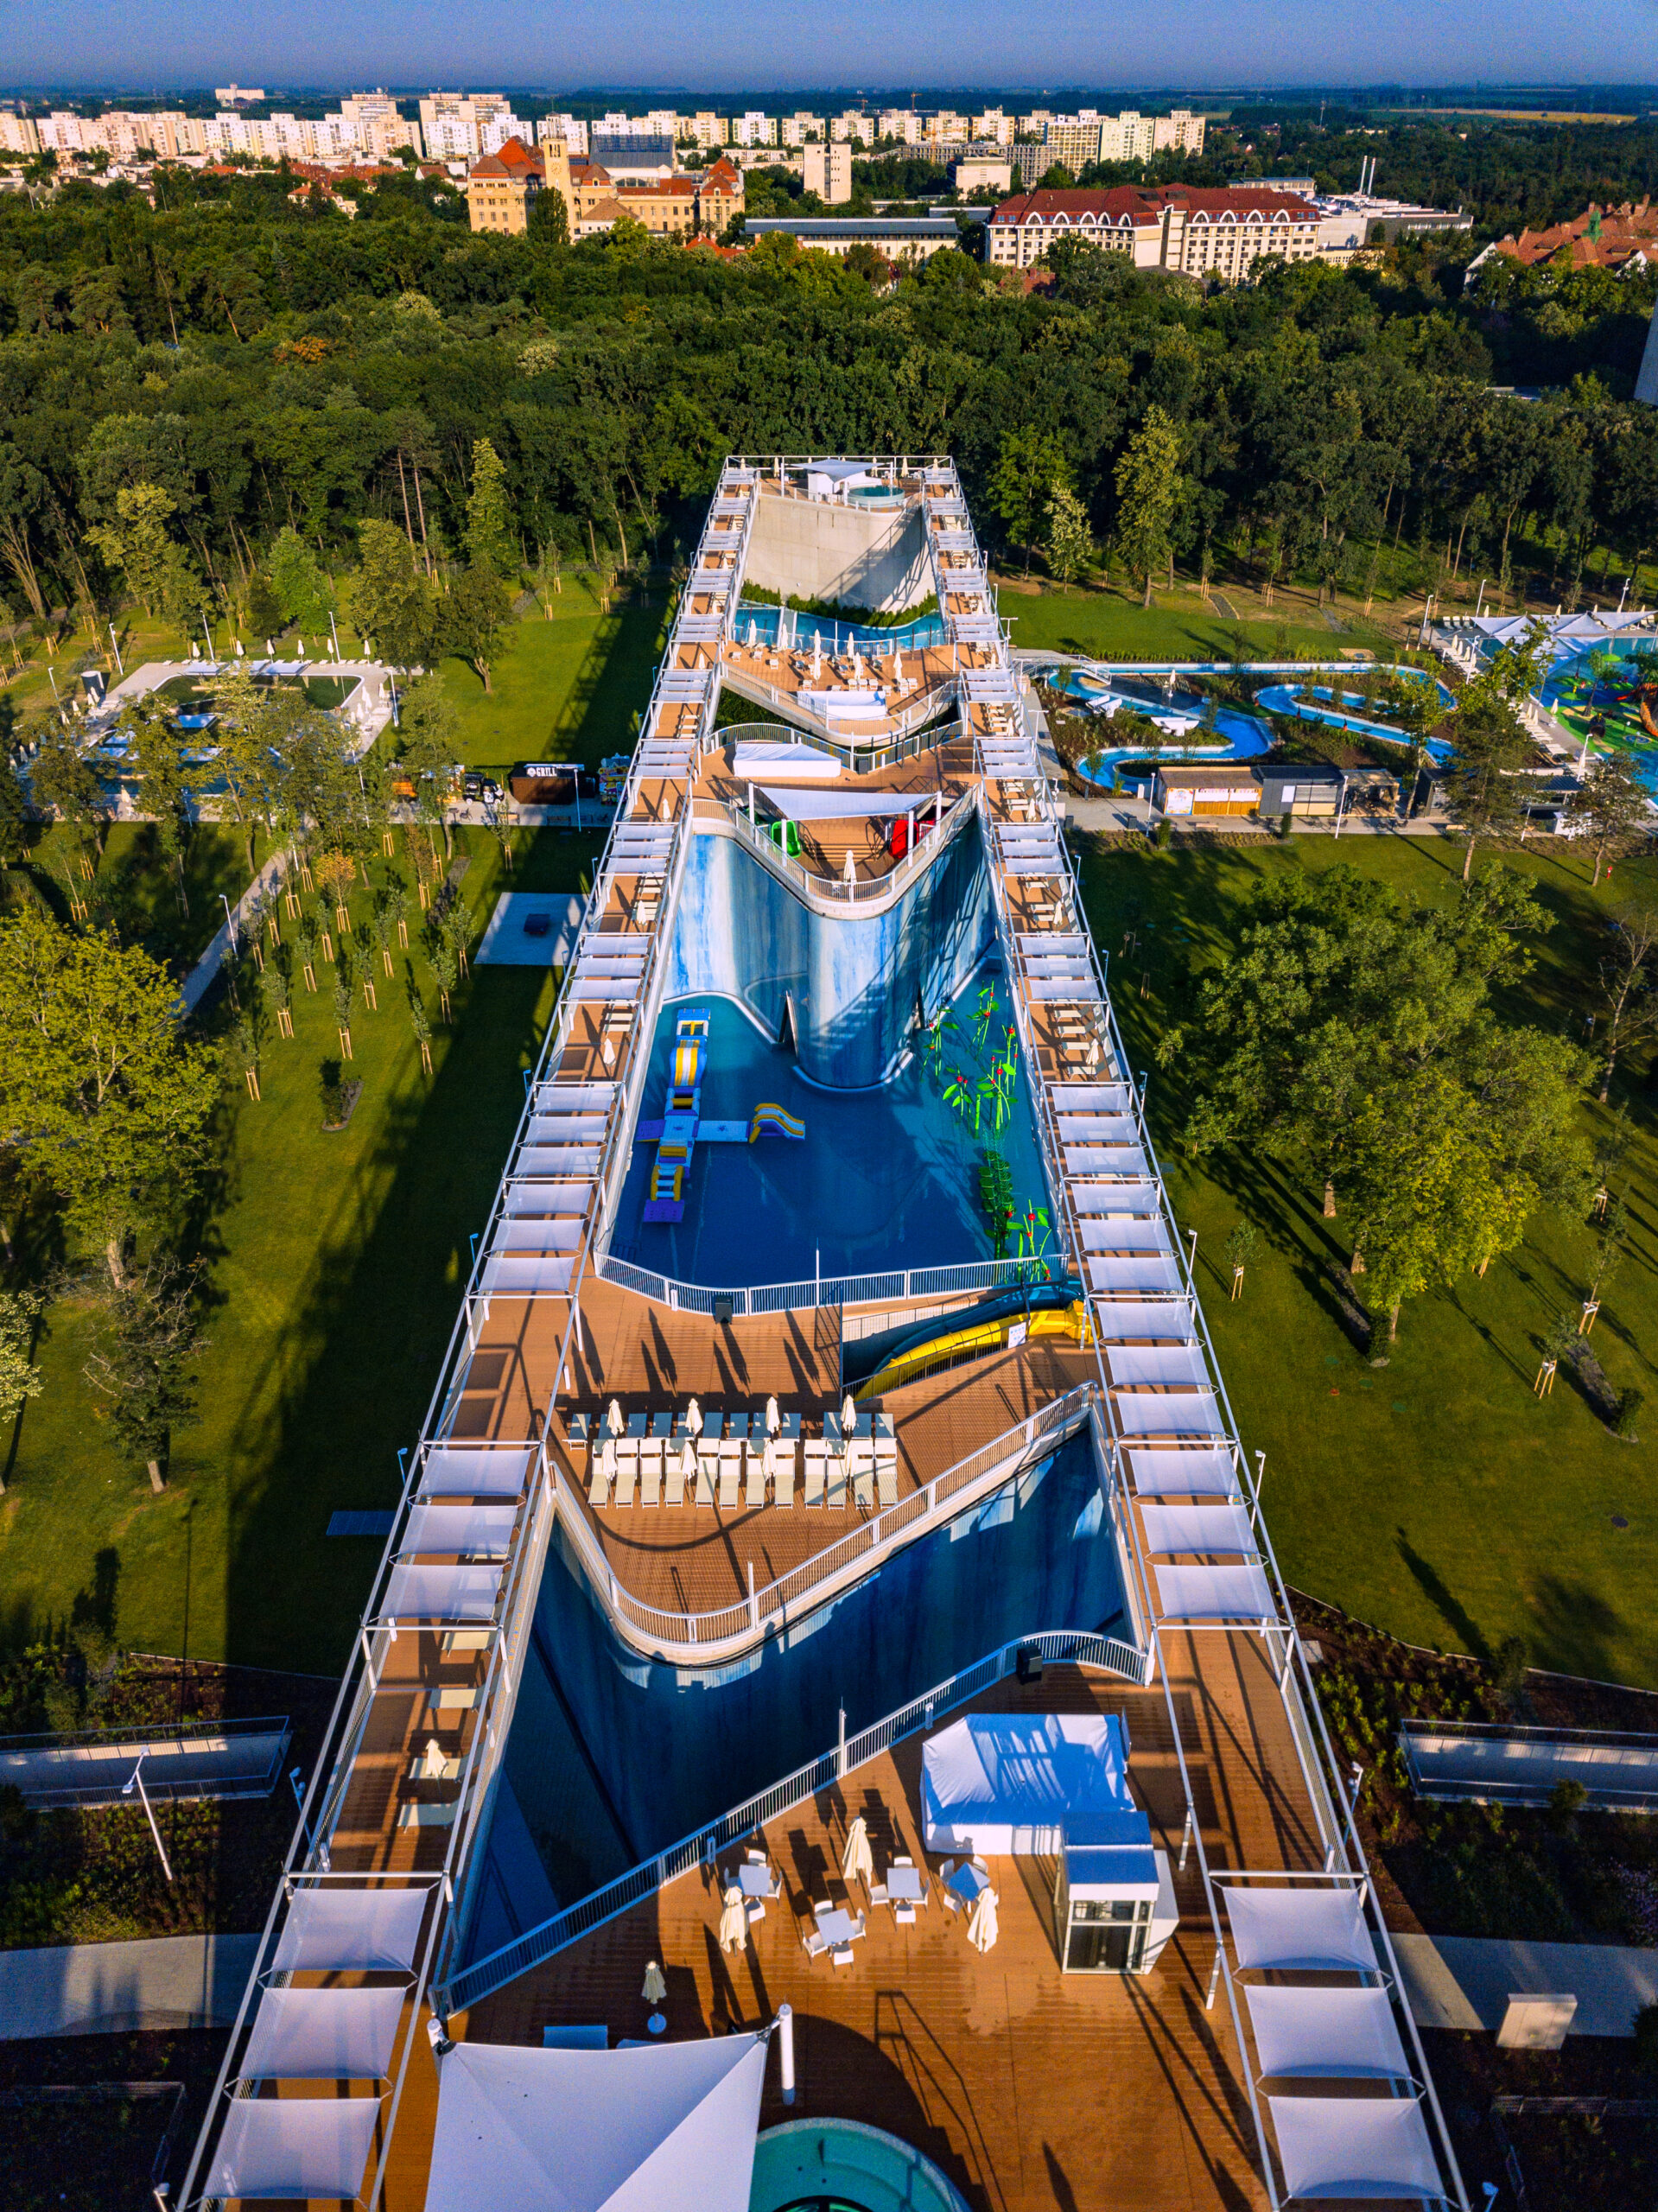 Aquaticum Waterpark of Debrecen